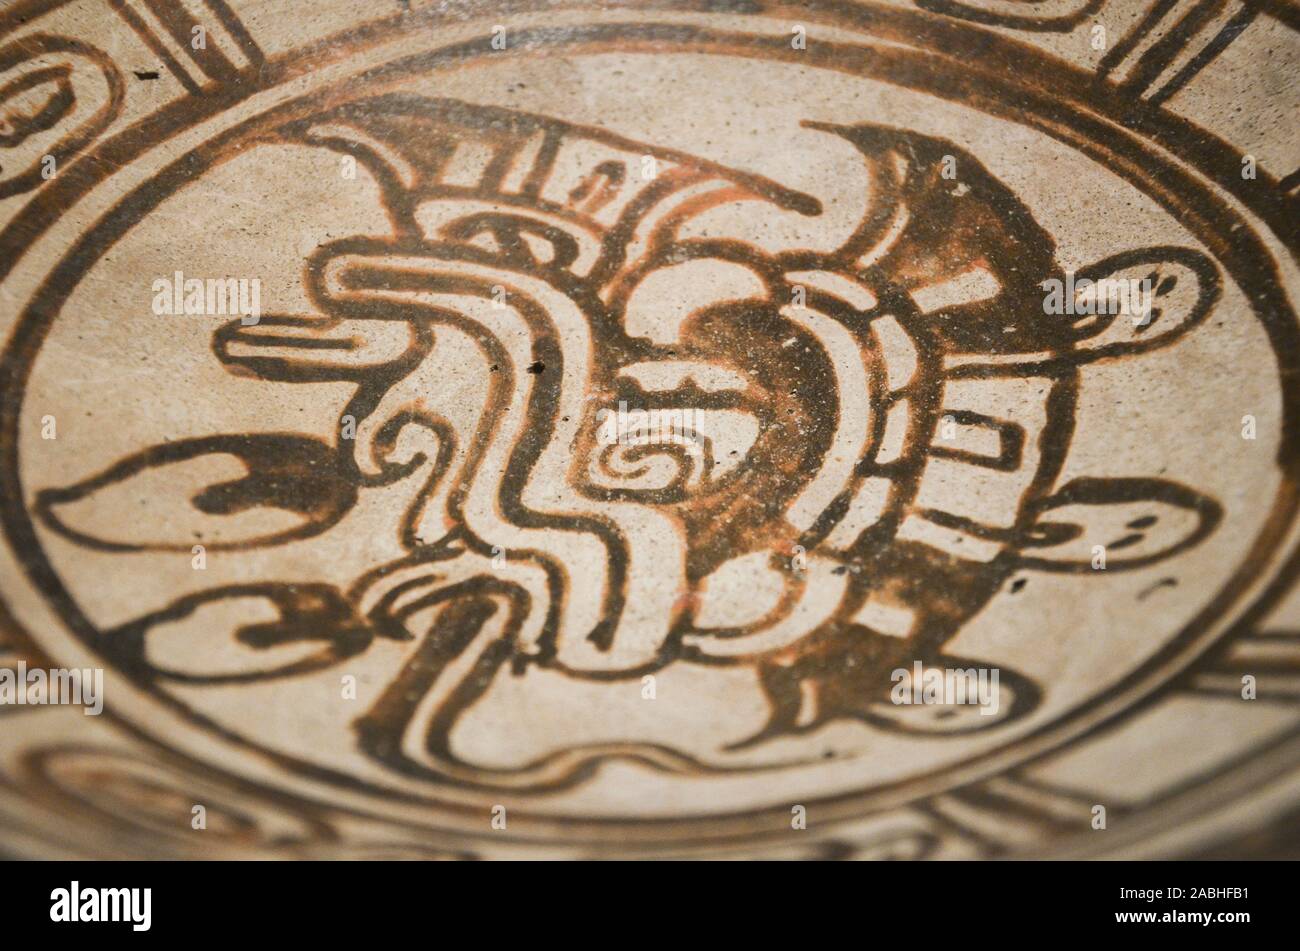 Plaque en céramique peint maya, exposée au Musée de l'or, de l'exposition temporaire le temps et la société maya Banque D'Images